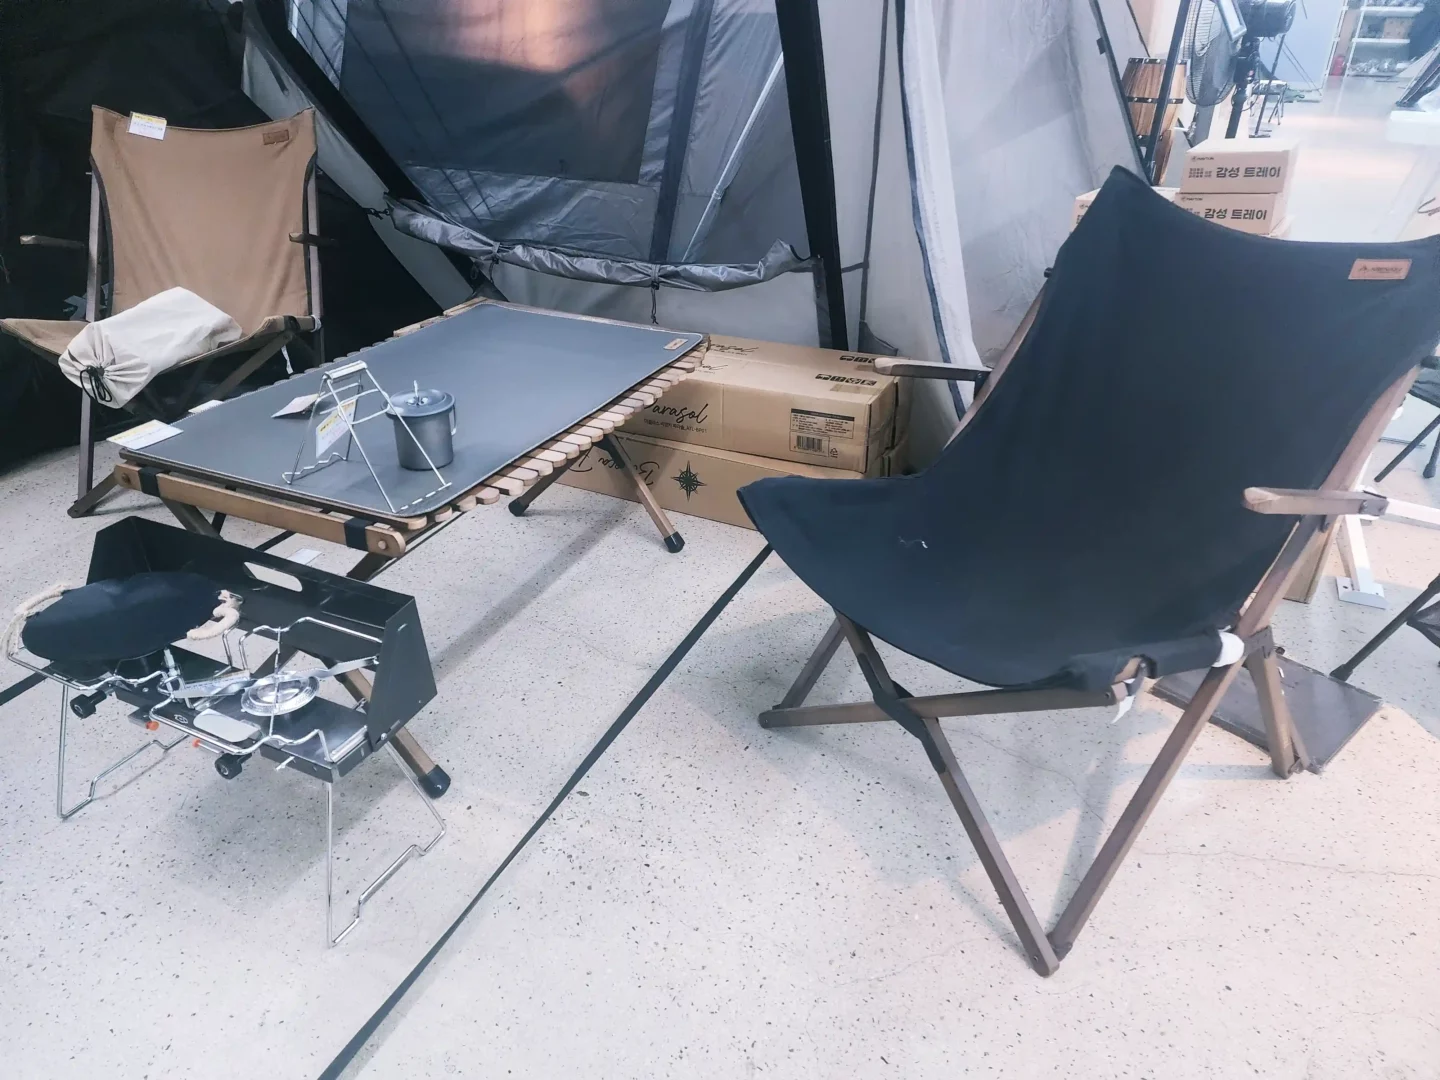 캠핑용품 의자와 테이블 높이의 중요성을 나타낸 사진.